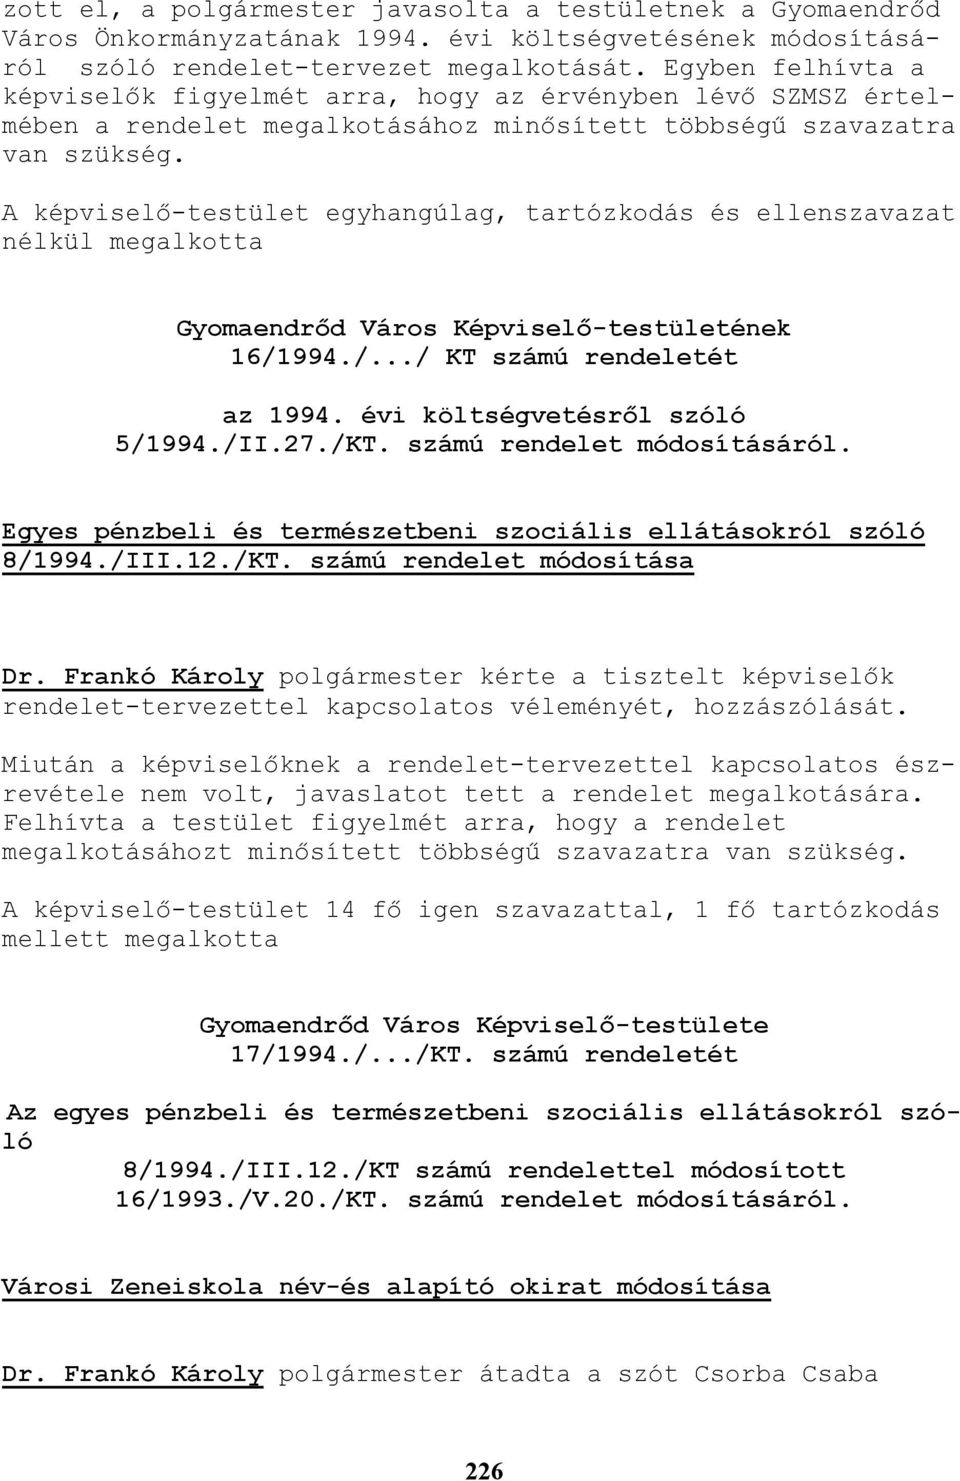 A képviselı-testület egyhangúlag, tartózkodás és ellenszavazat nélkül megalkotta Gyomaendrıd Város Képviselı-testületének 16/1994./.../ KT számú rendeletét az 1994. évi költségvetésrıl szóló 5/1994.